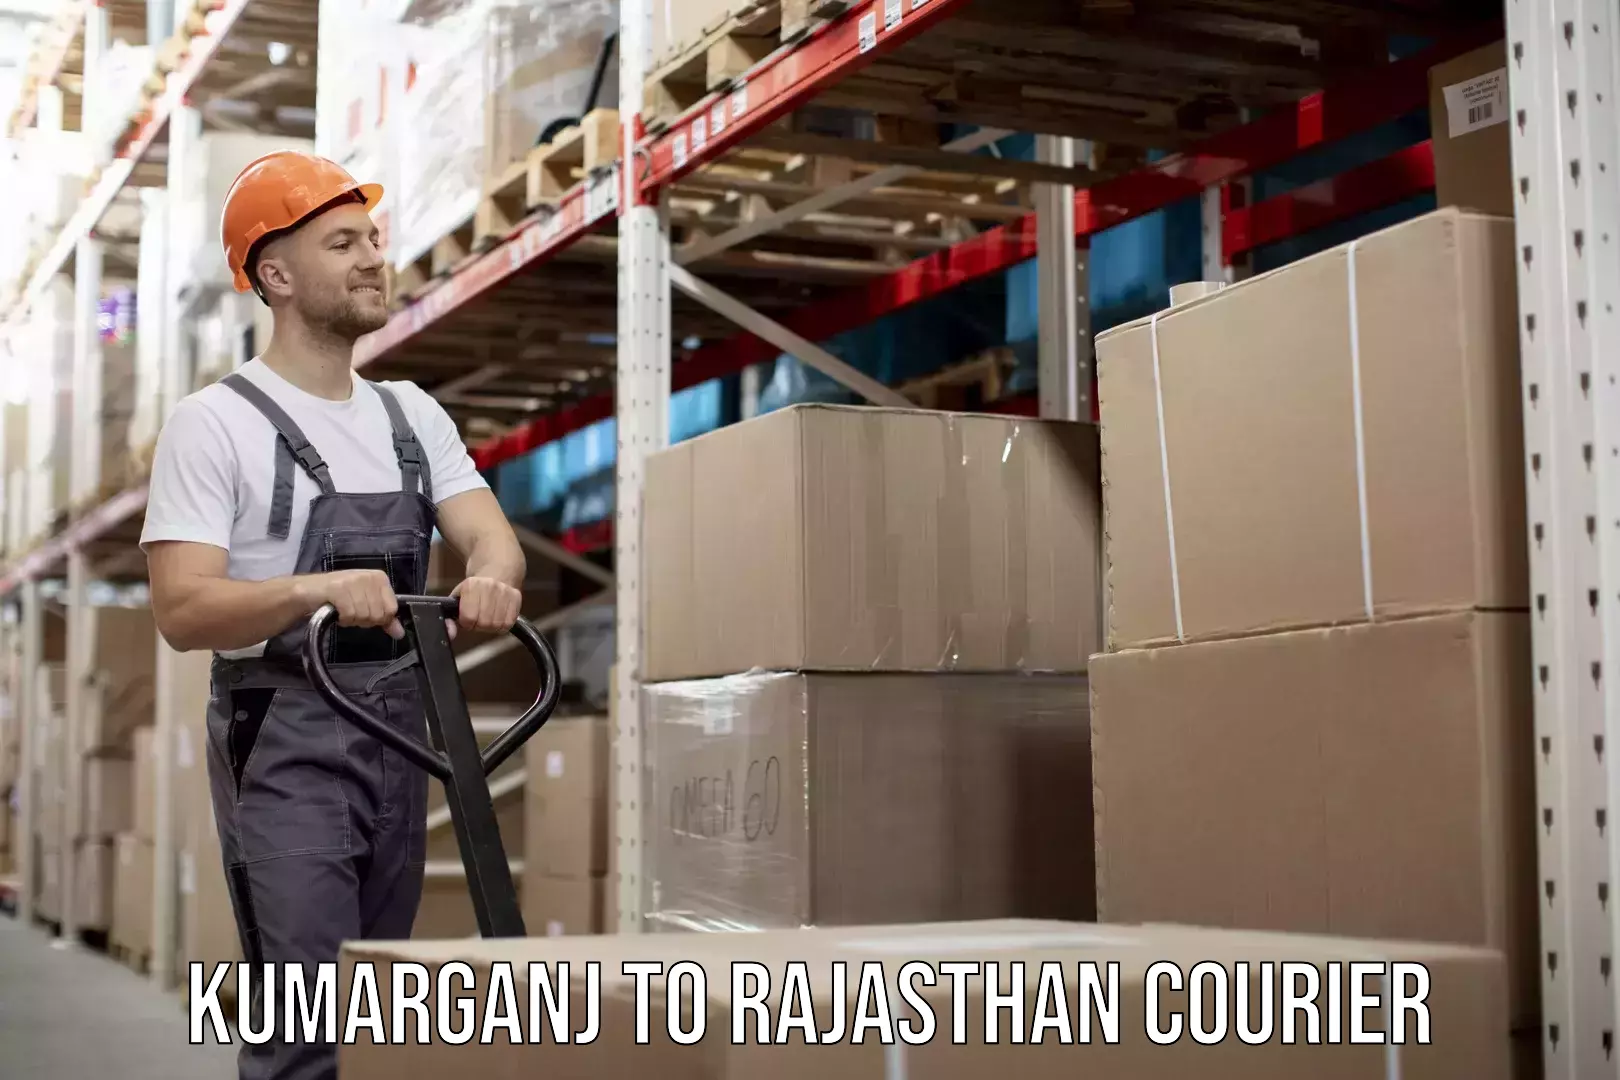 Furniture moving experts Kumarganj to Rajasthan